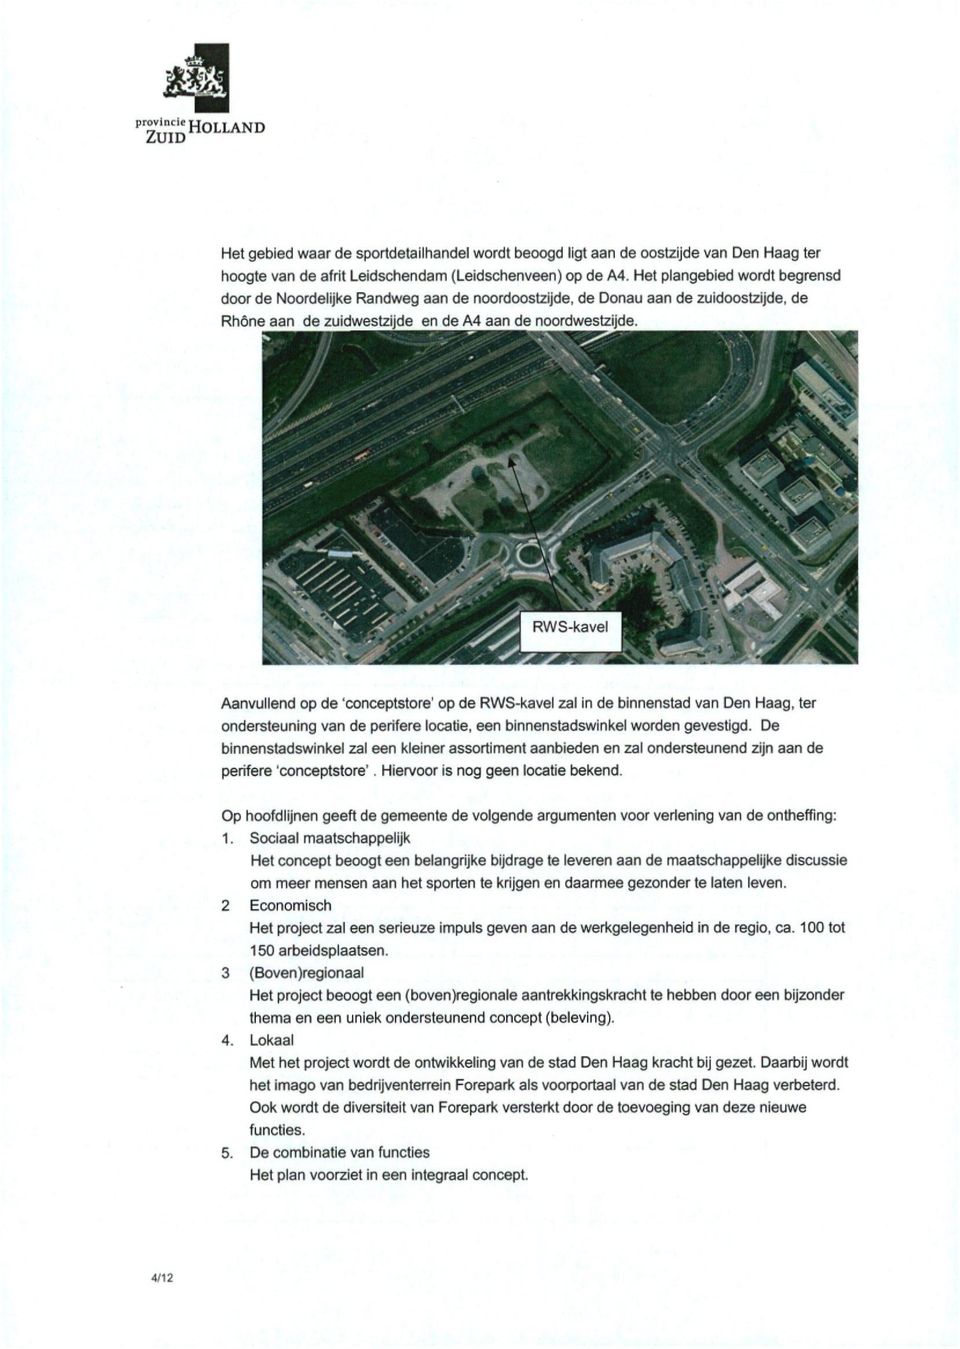 Aanvullend op de 'conceptstore' op de RWS-kavel zal in de binnenstad van Den Haag, ter ondersteuning van de perifere locatie, een binnenstadswinkel worden gevestigd.